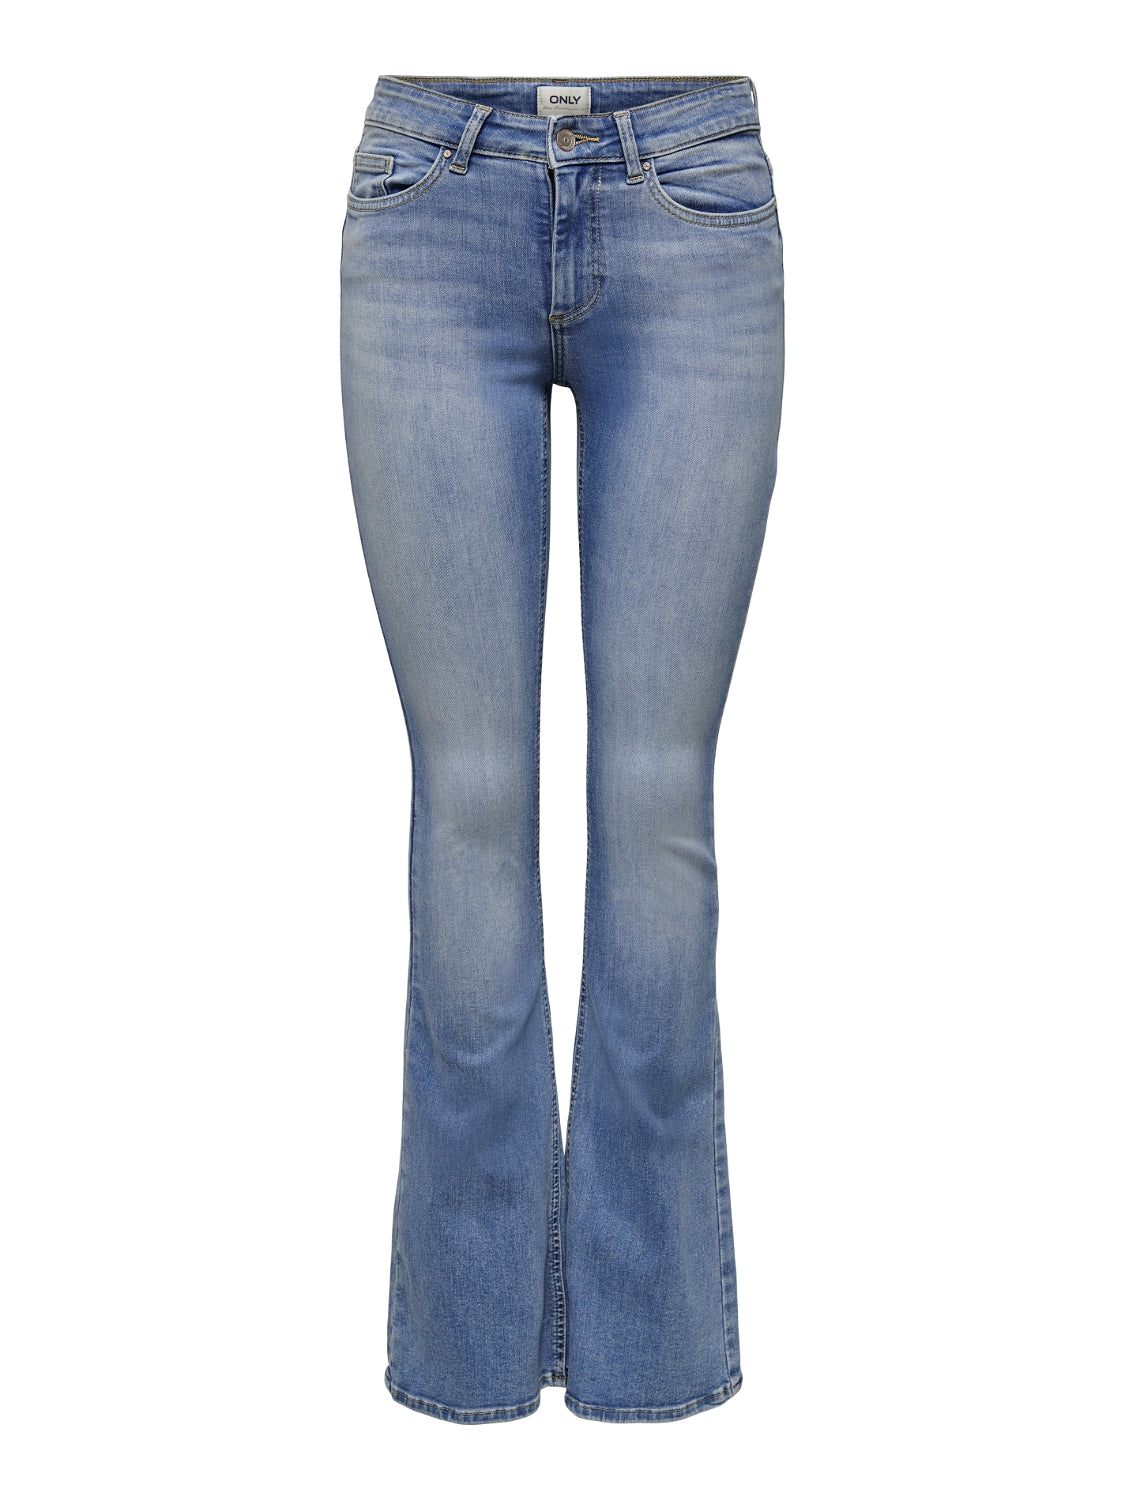 Blush Flair Jeans - Blue 32 Leg